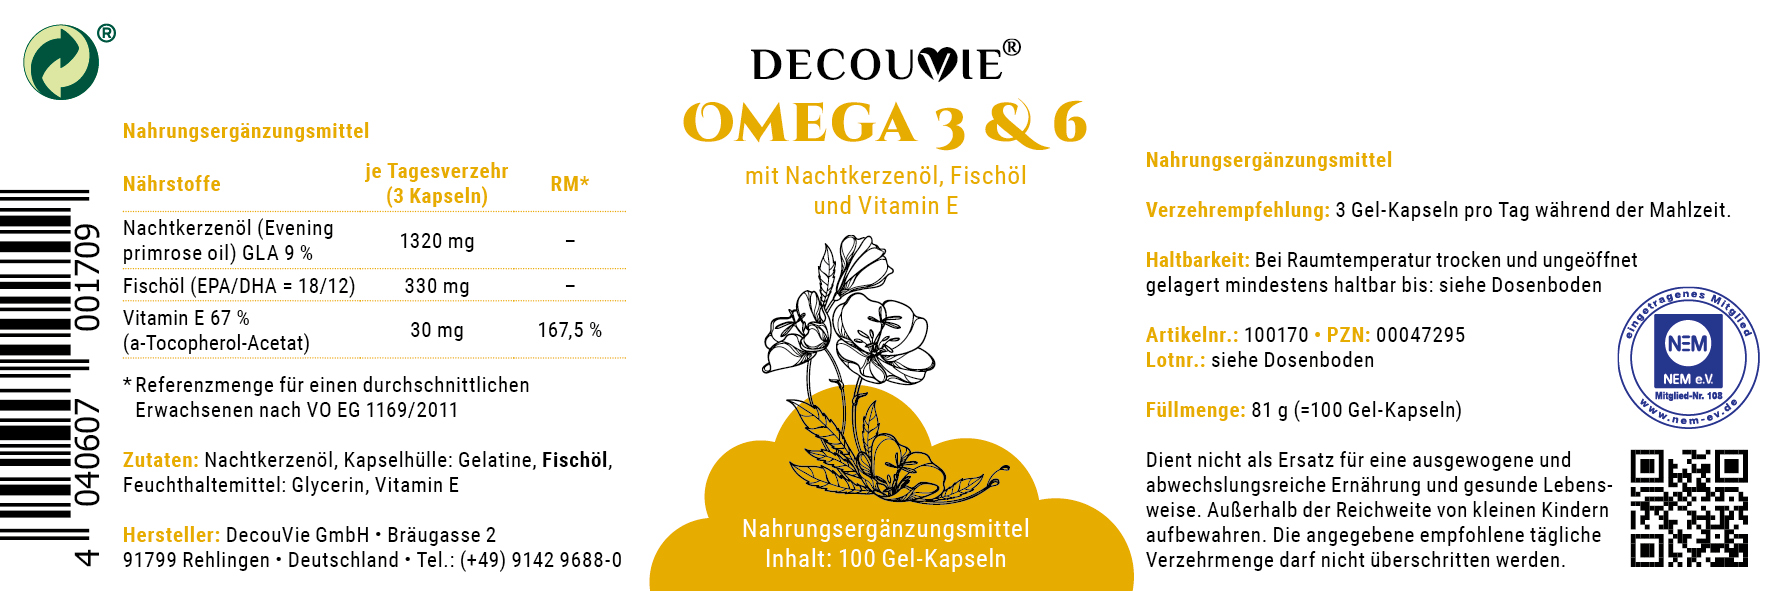 Omega 3 & 6, zur Ergänzung essentieller Fettsäuren, 100 Gel-Kapseln